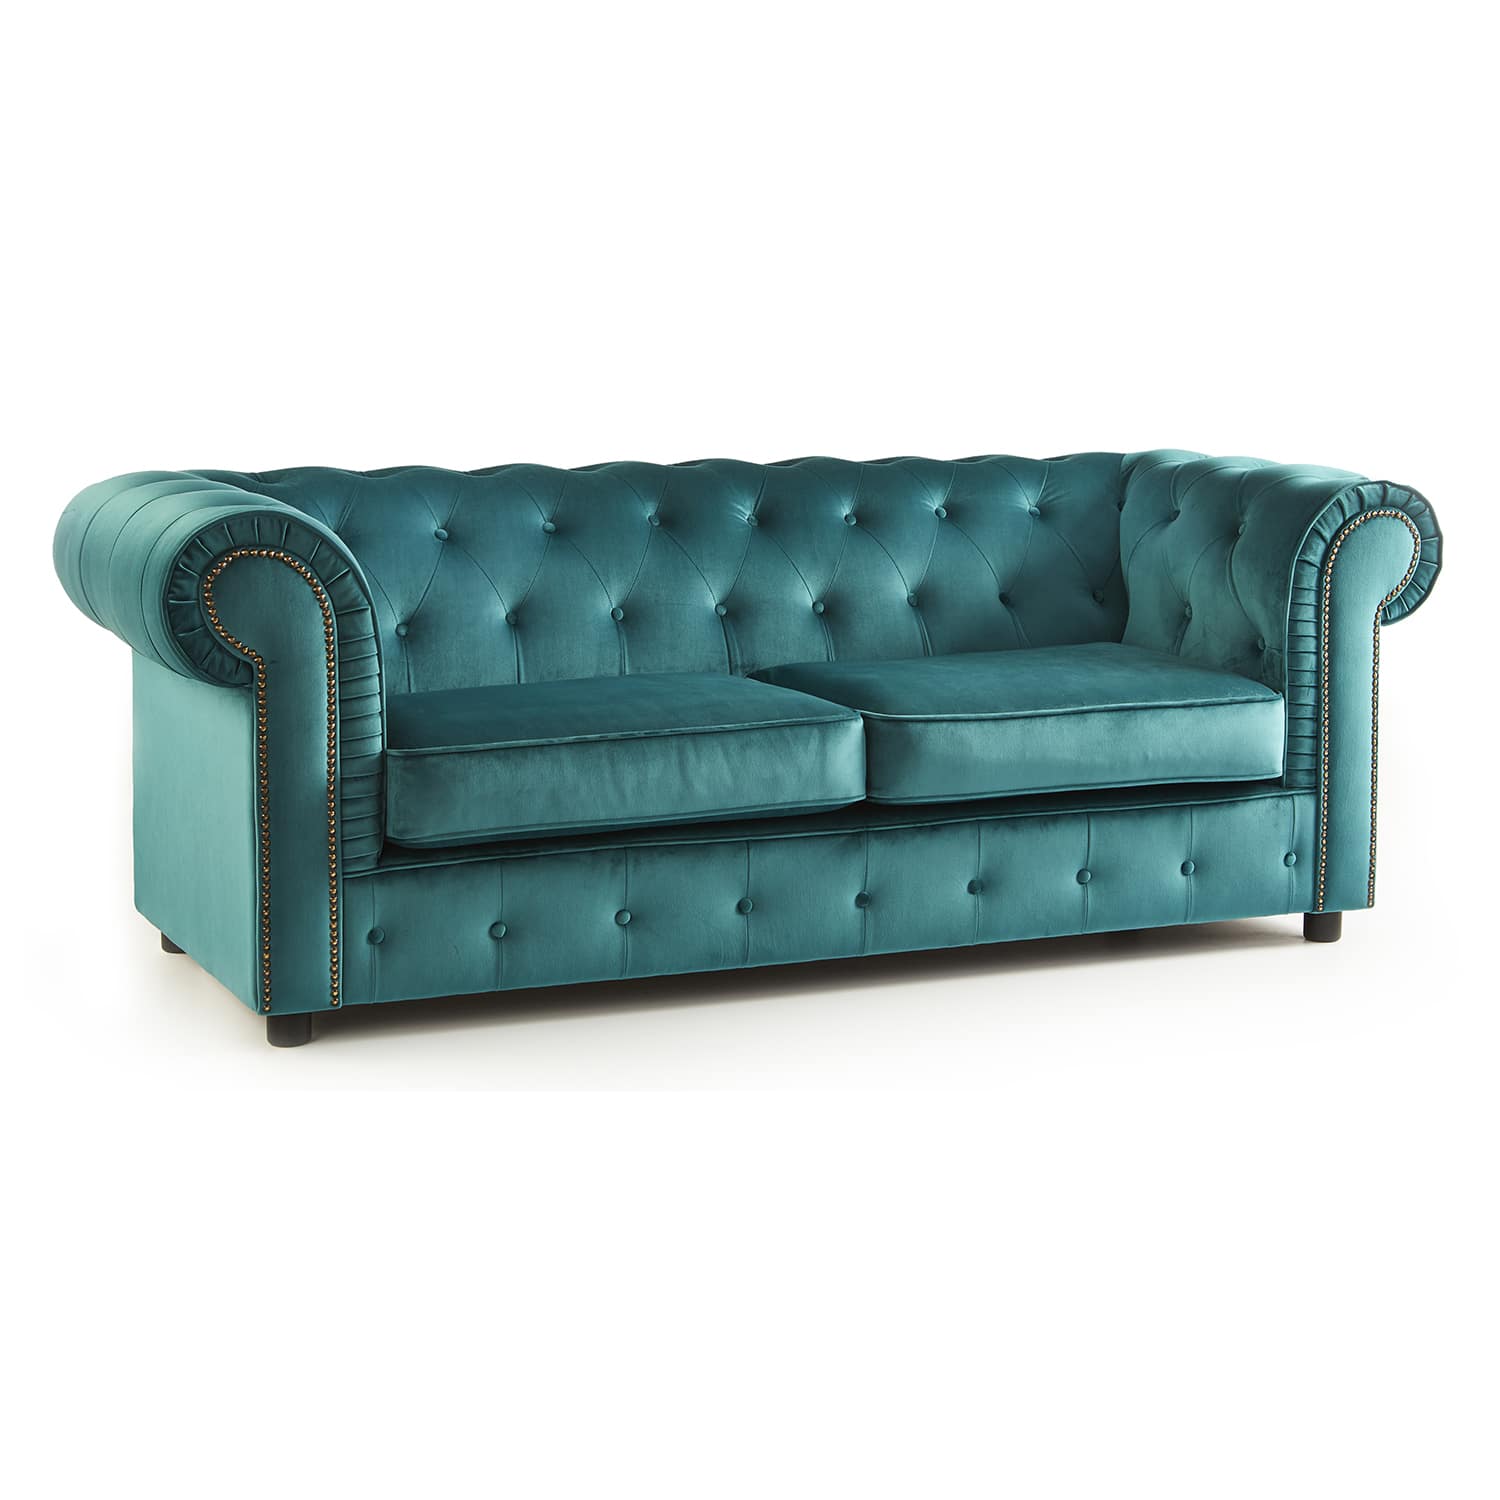 The Ashcroft Soft Velvet Chesterfield 3 Seater Sofa - Teal